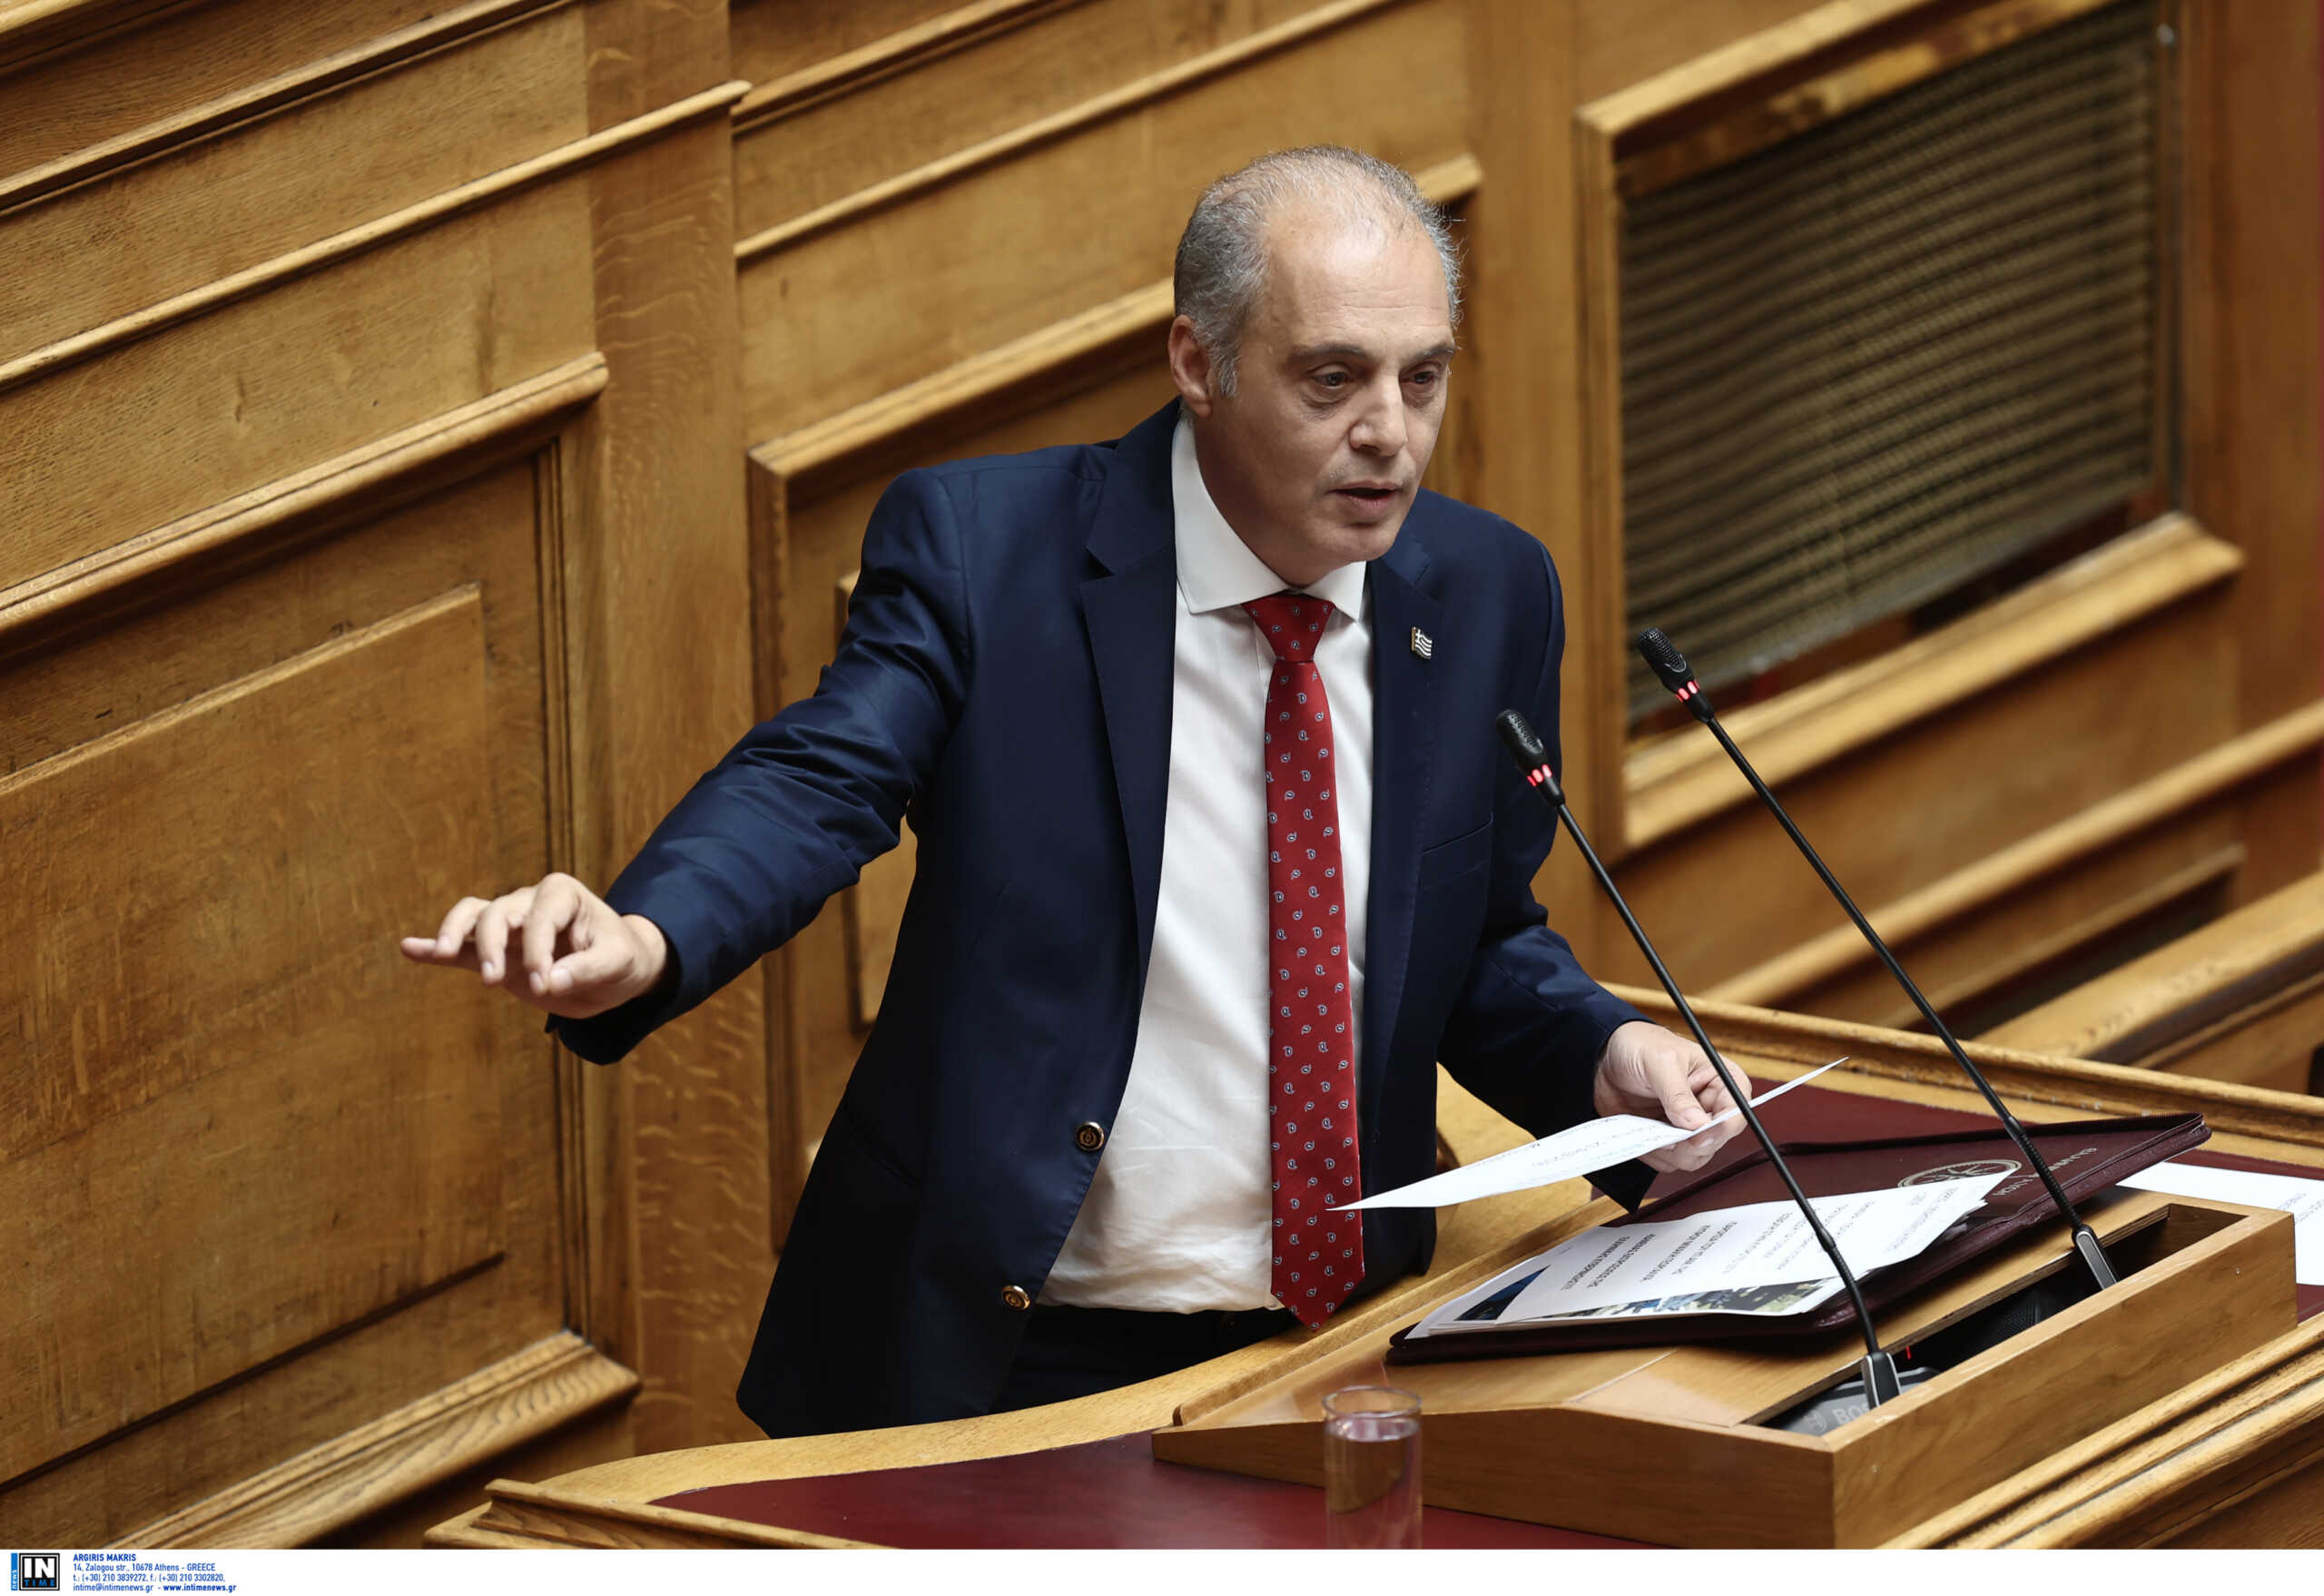 Βελόπουλος στη Βουλή: Δεν σας νοιάζει η Κύπρος γιατί έχετε συμφωνήσει τις Πρέσπες του Αιγαίου